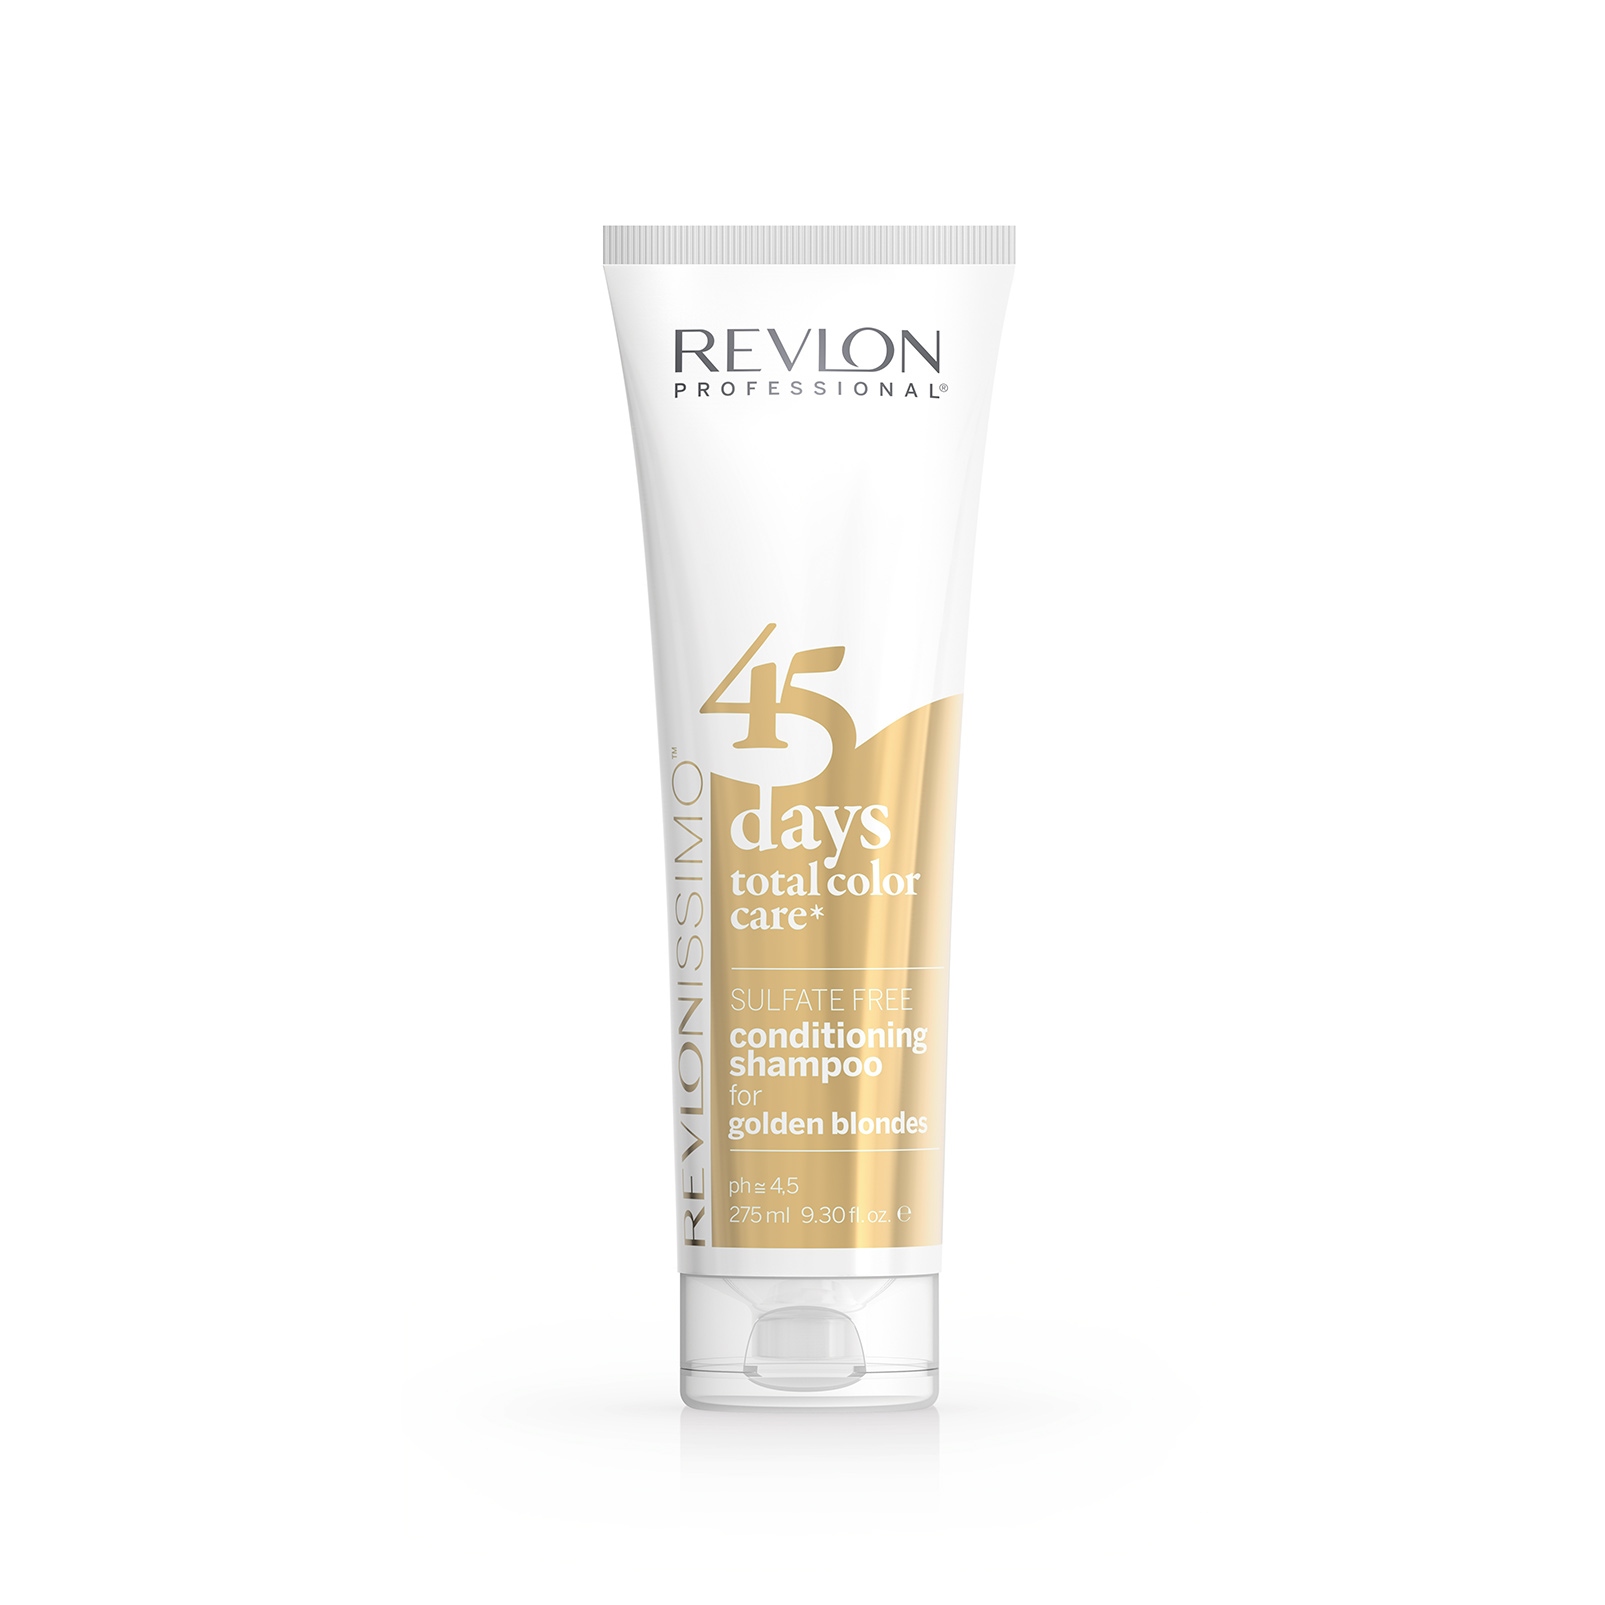 Шампуни для волос:  REVLON Professional -  Шампунь-кондиционер для Золотистых Блондинок 45 Days Shampoo GOLDEN BLONDES (275 мл)